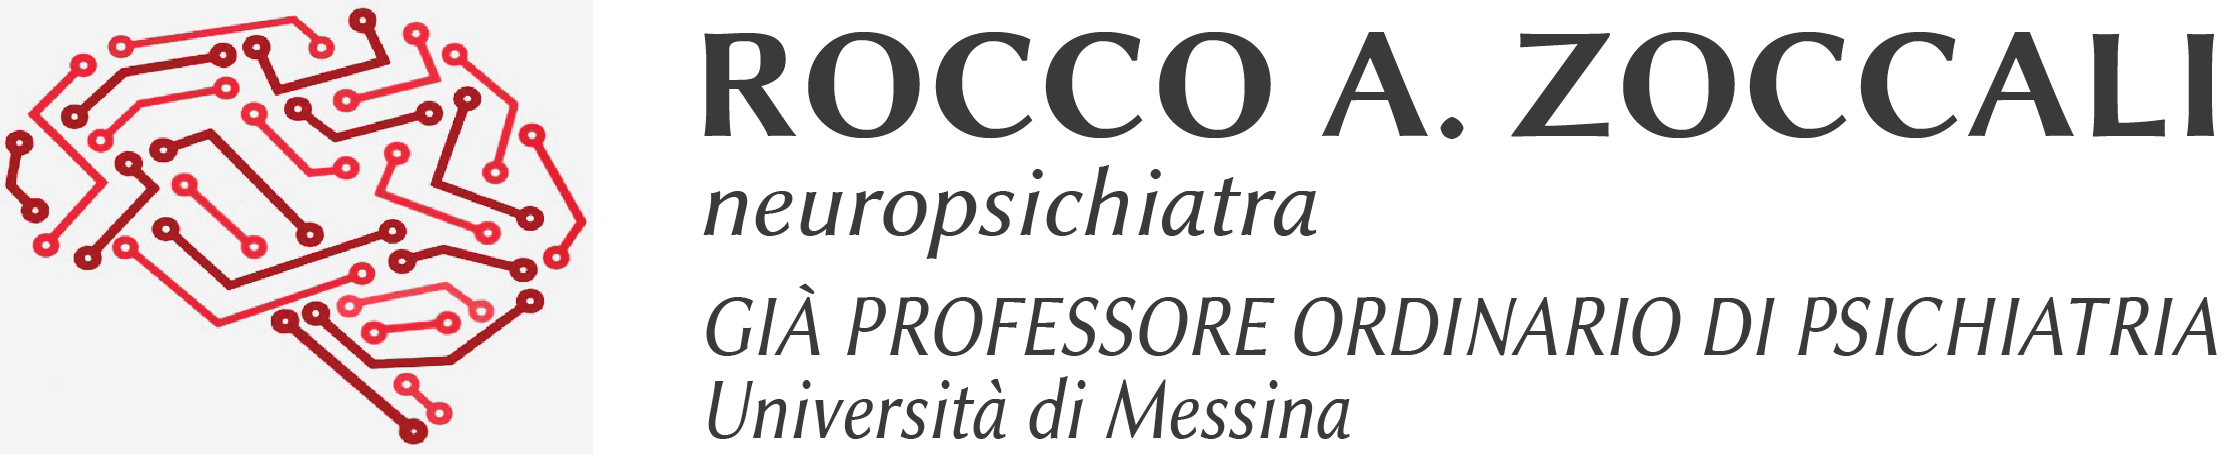 Rocco Antonio Zoccali